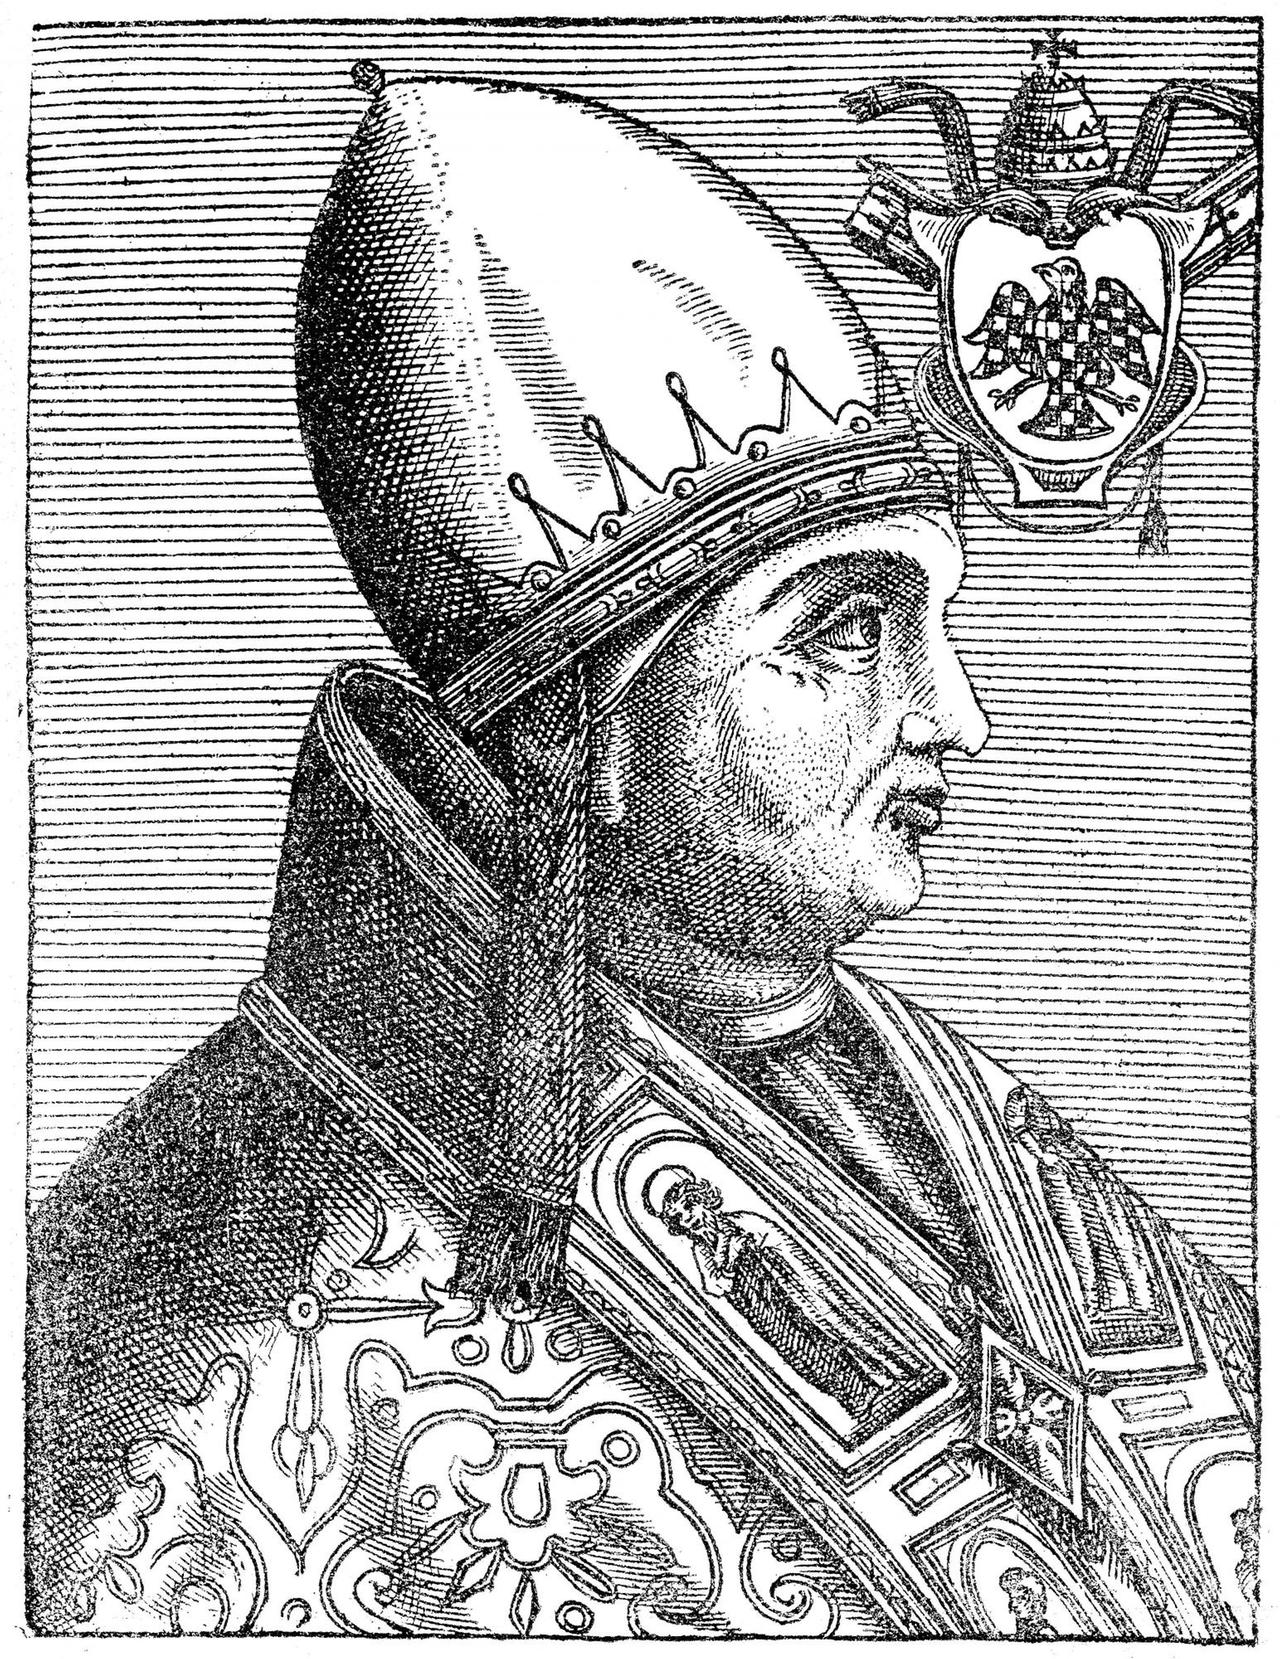 Papst Gregor IX. Er war Papst der katholischen Kirche vom 19. März 1227 bis zu seinem Tode am 22. August 1241.